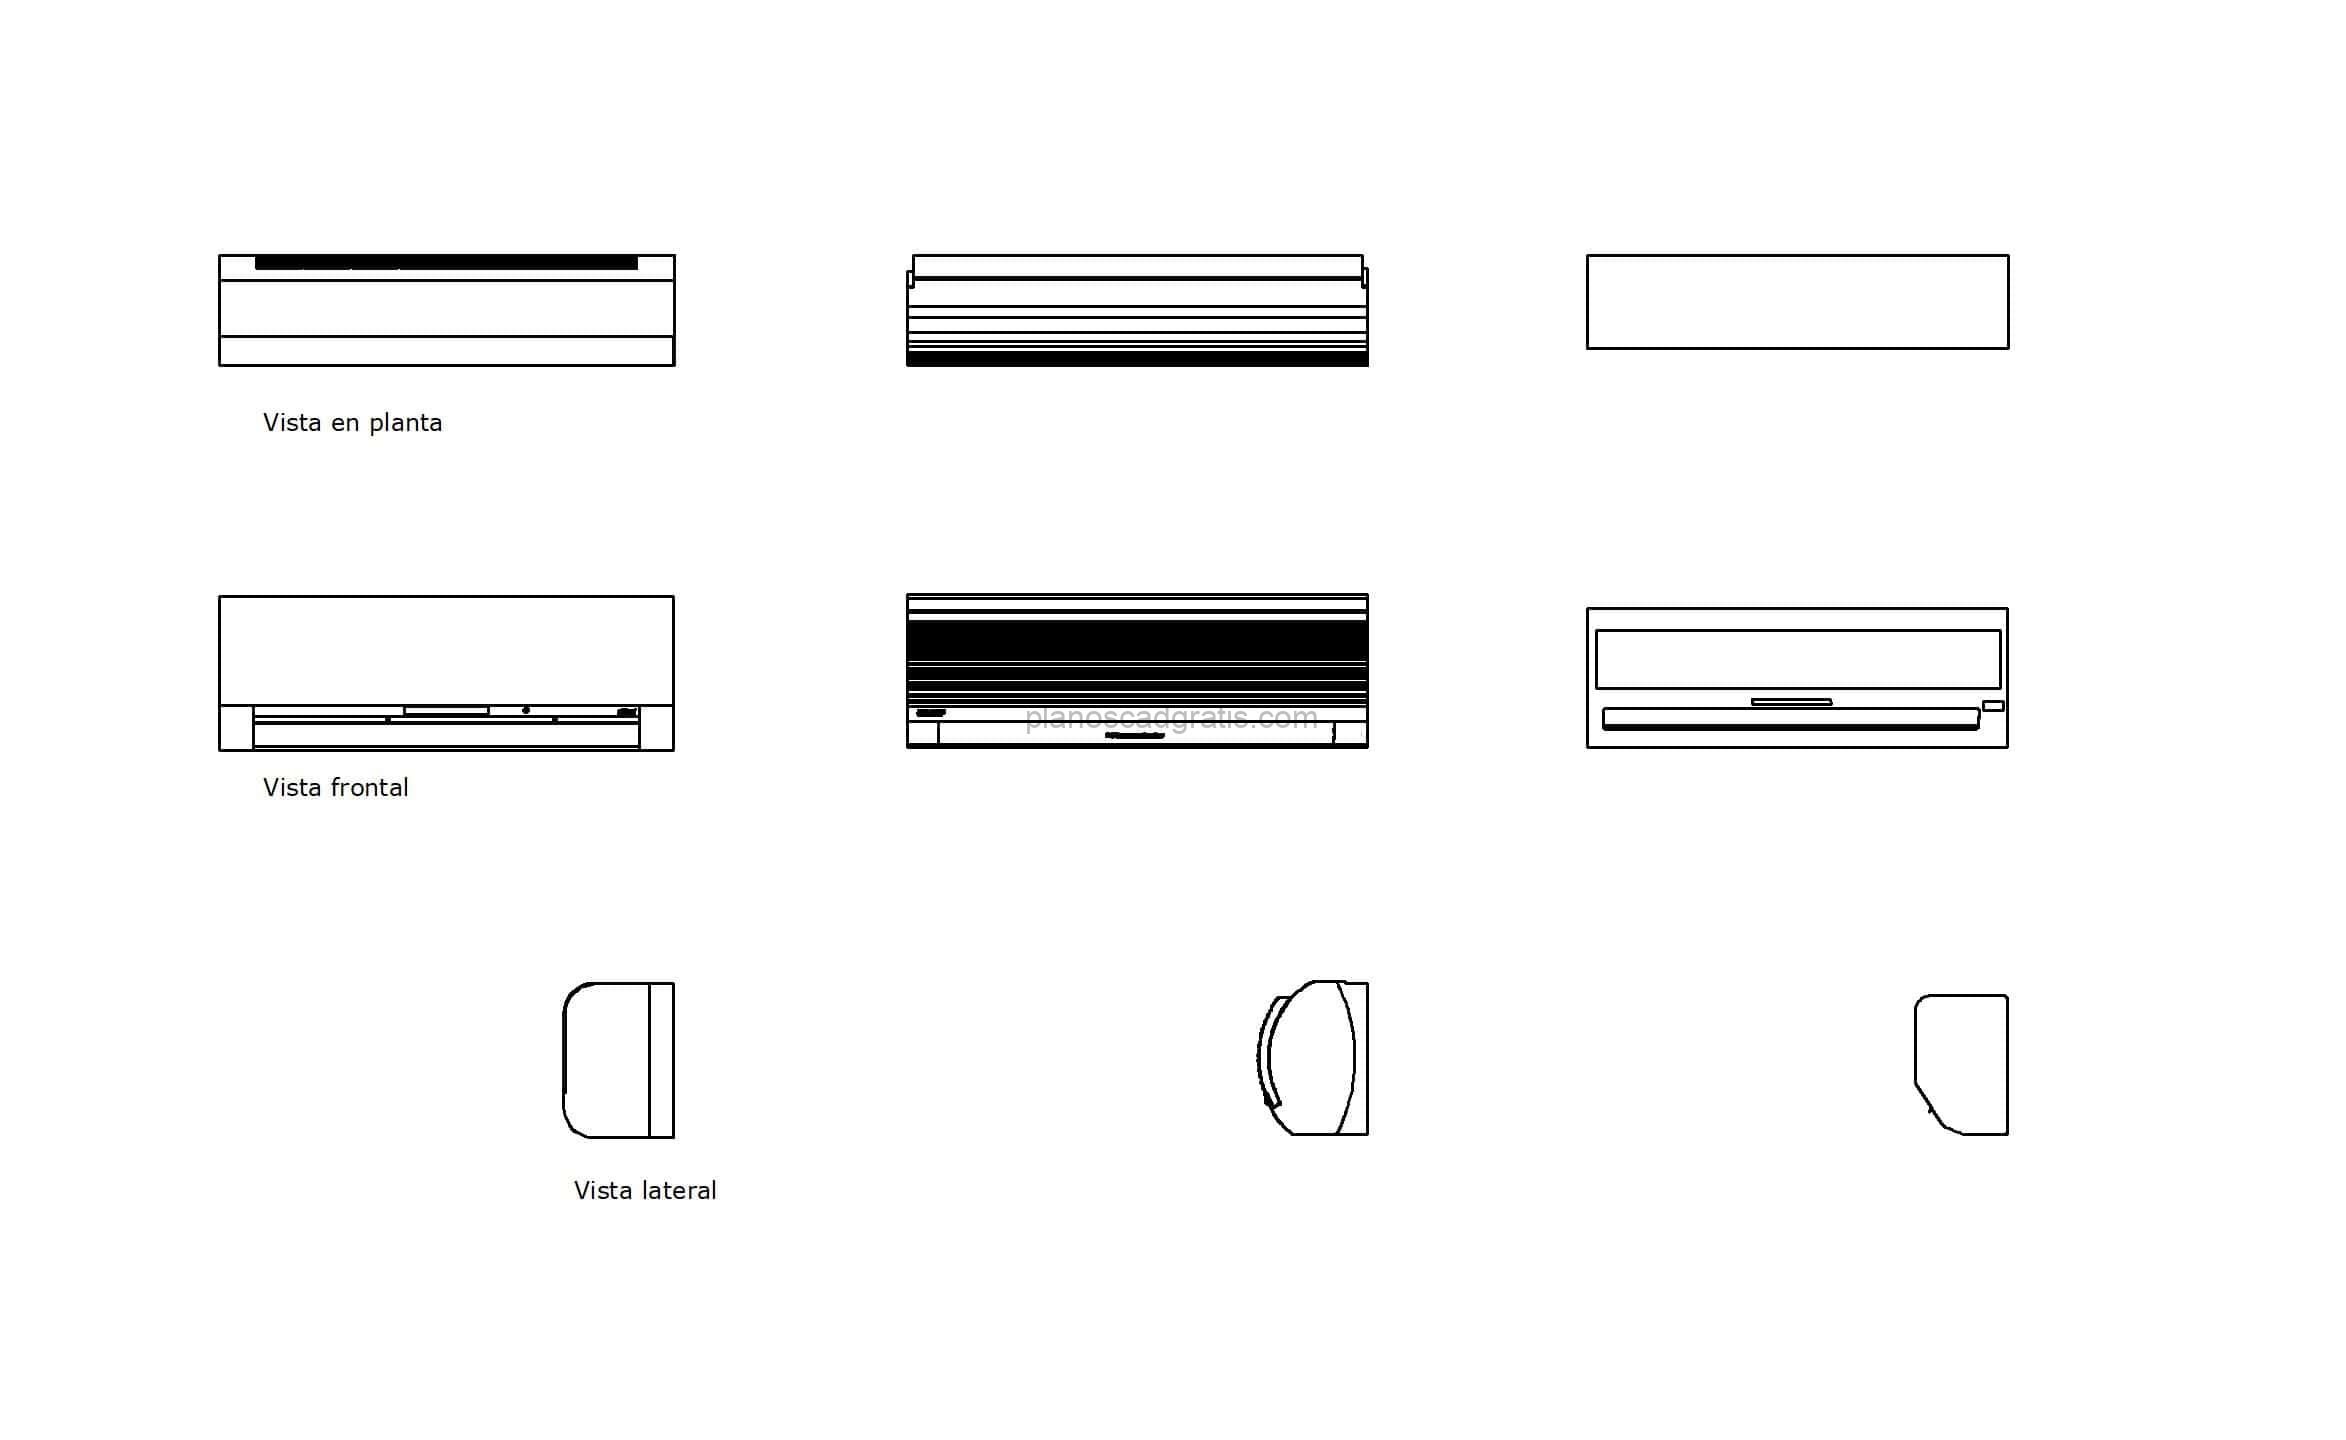 bloque de autocad de diferentes aires acondicionados, vistas en planta y elevaciones para descaga gratis, formato dwg